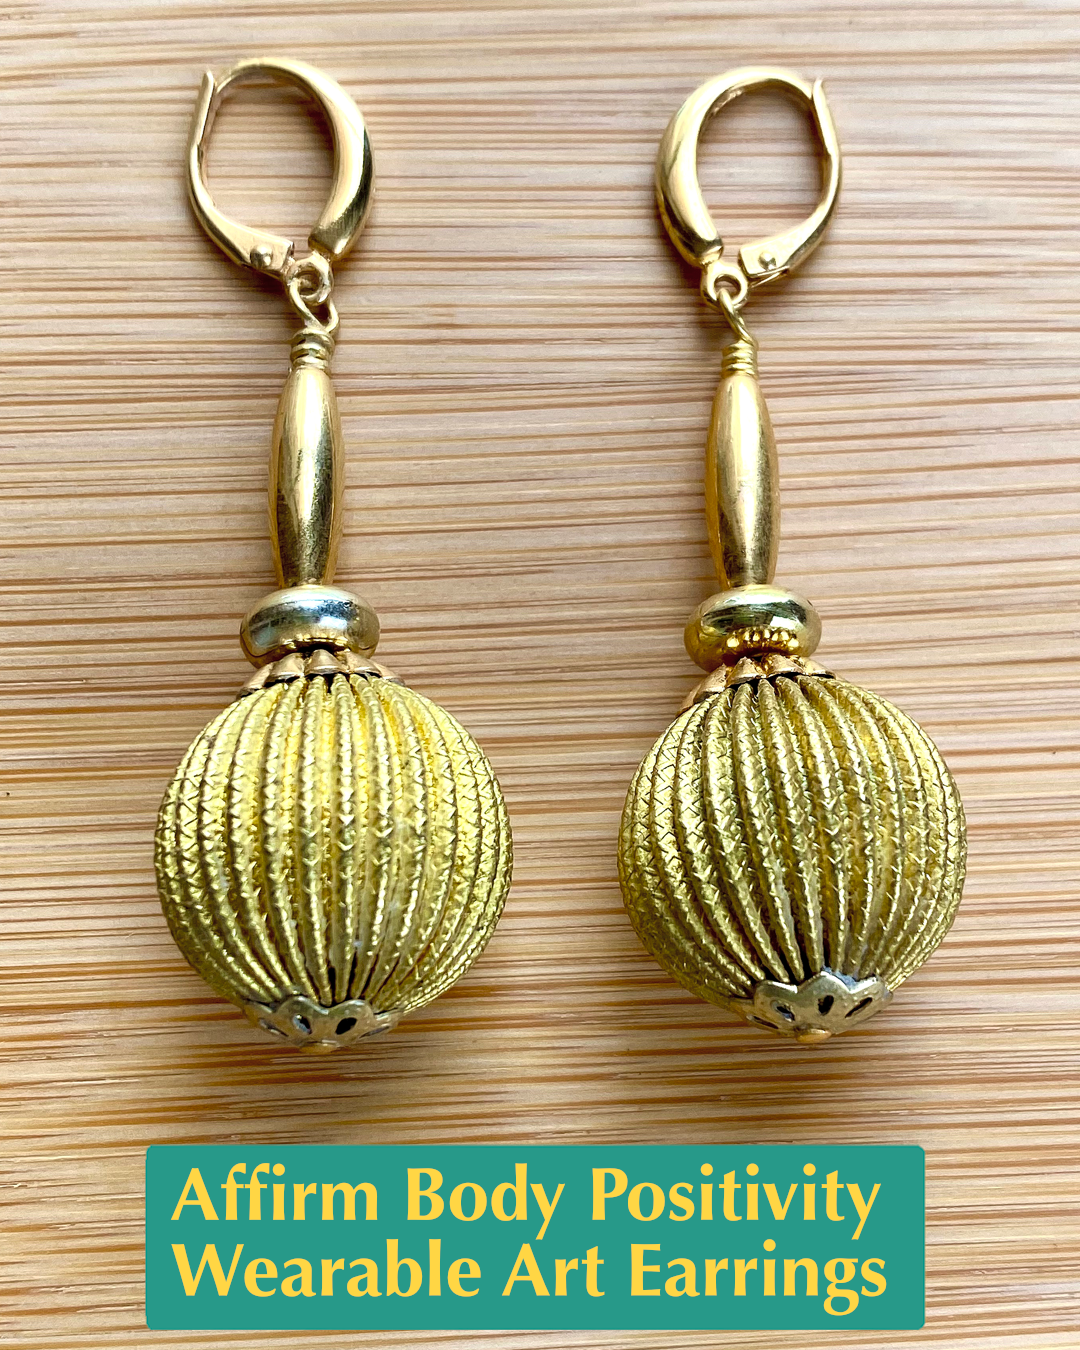 Affirm Body Positivity Wearable Art Earrings